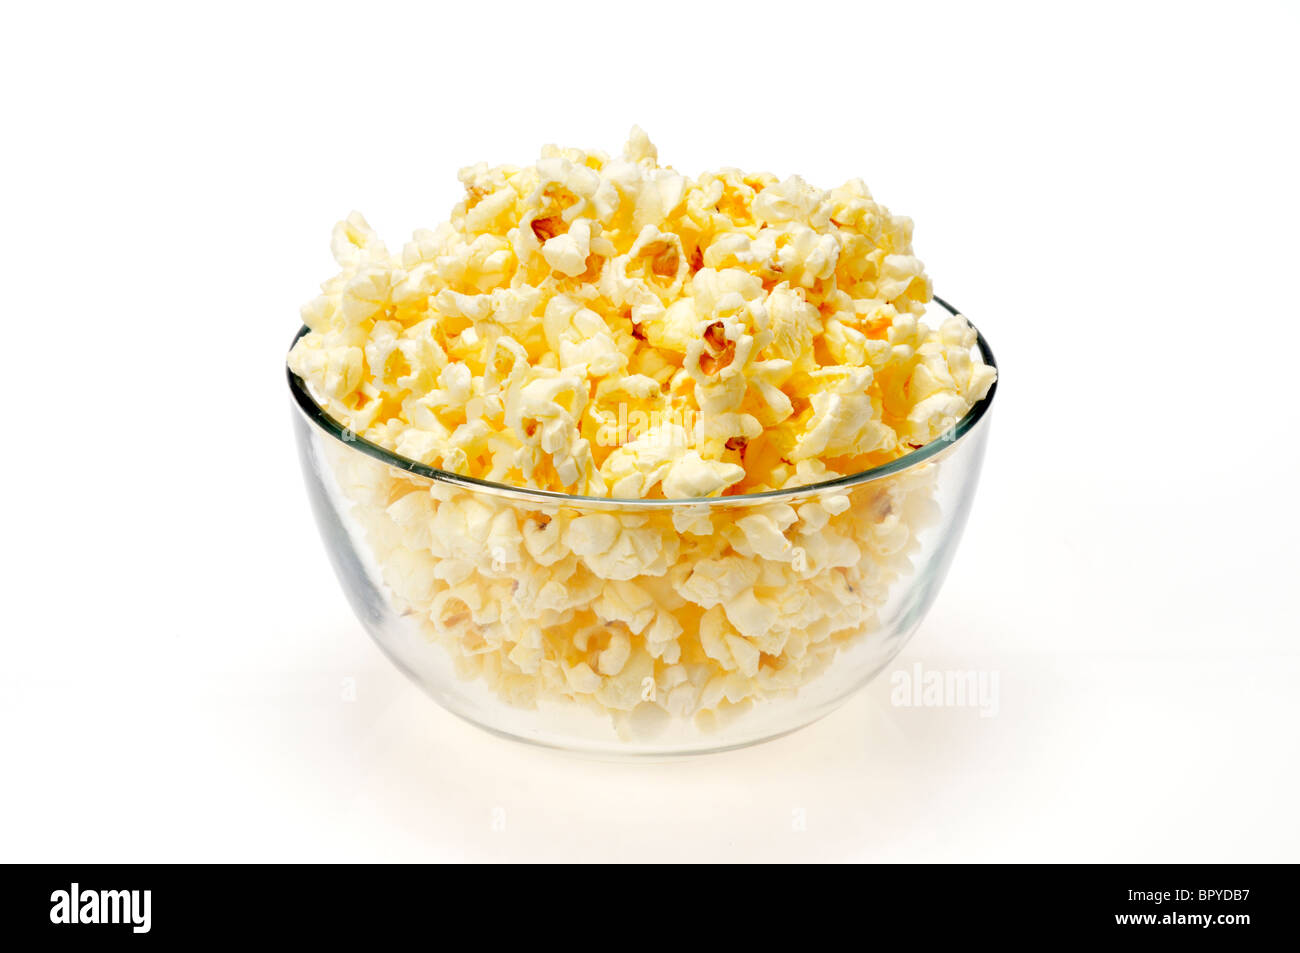 Eine Glasschüssel gefüllt mit Mikrowellen-Popcorn auf weißem Hintergrund, Ausschnitt. Stockfoto